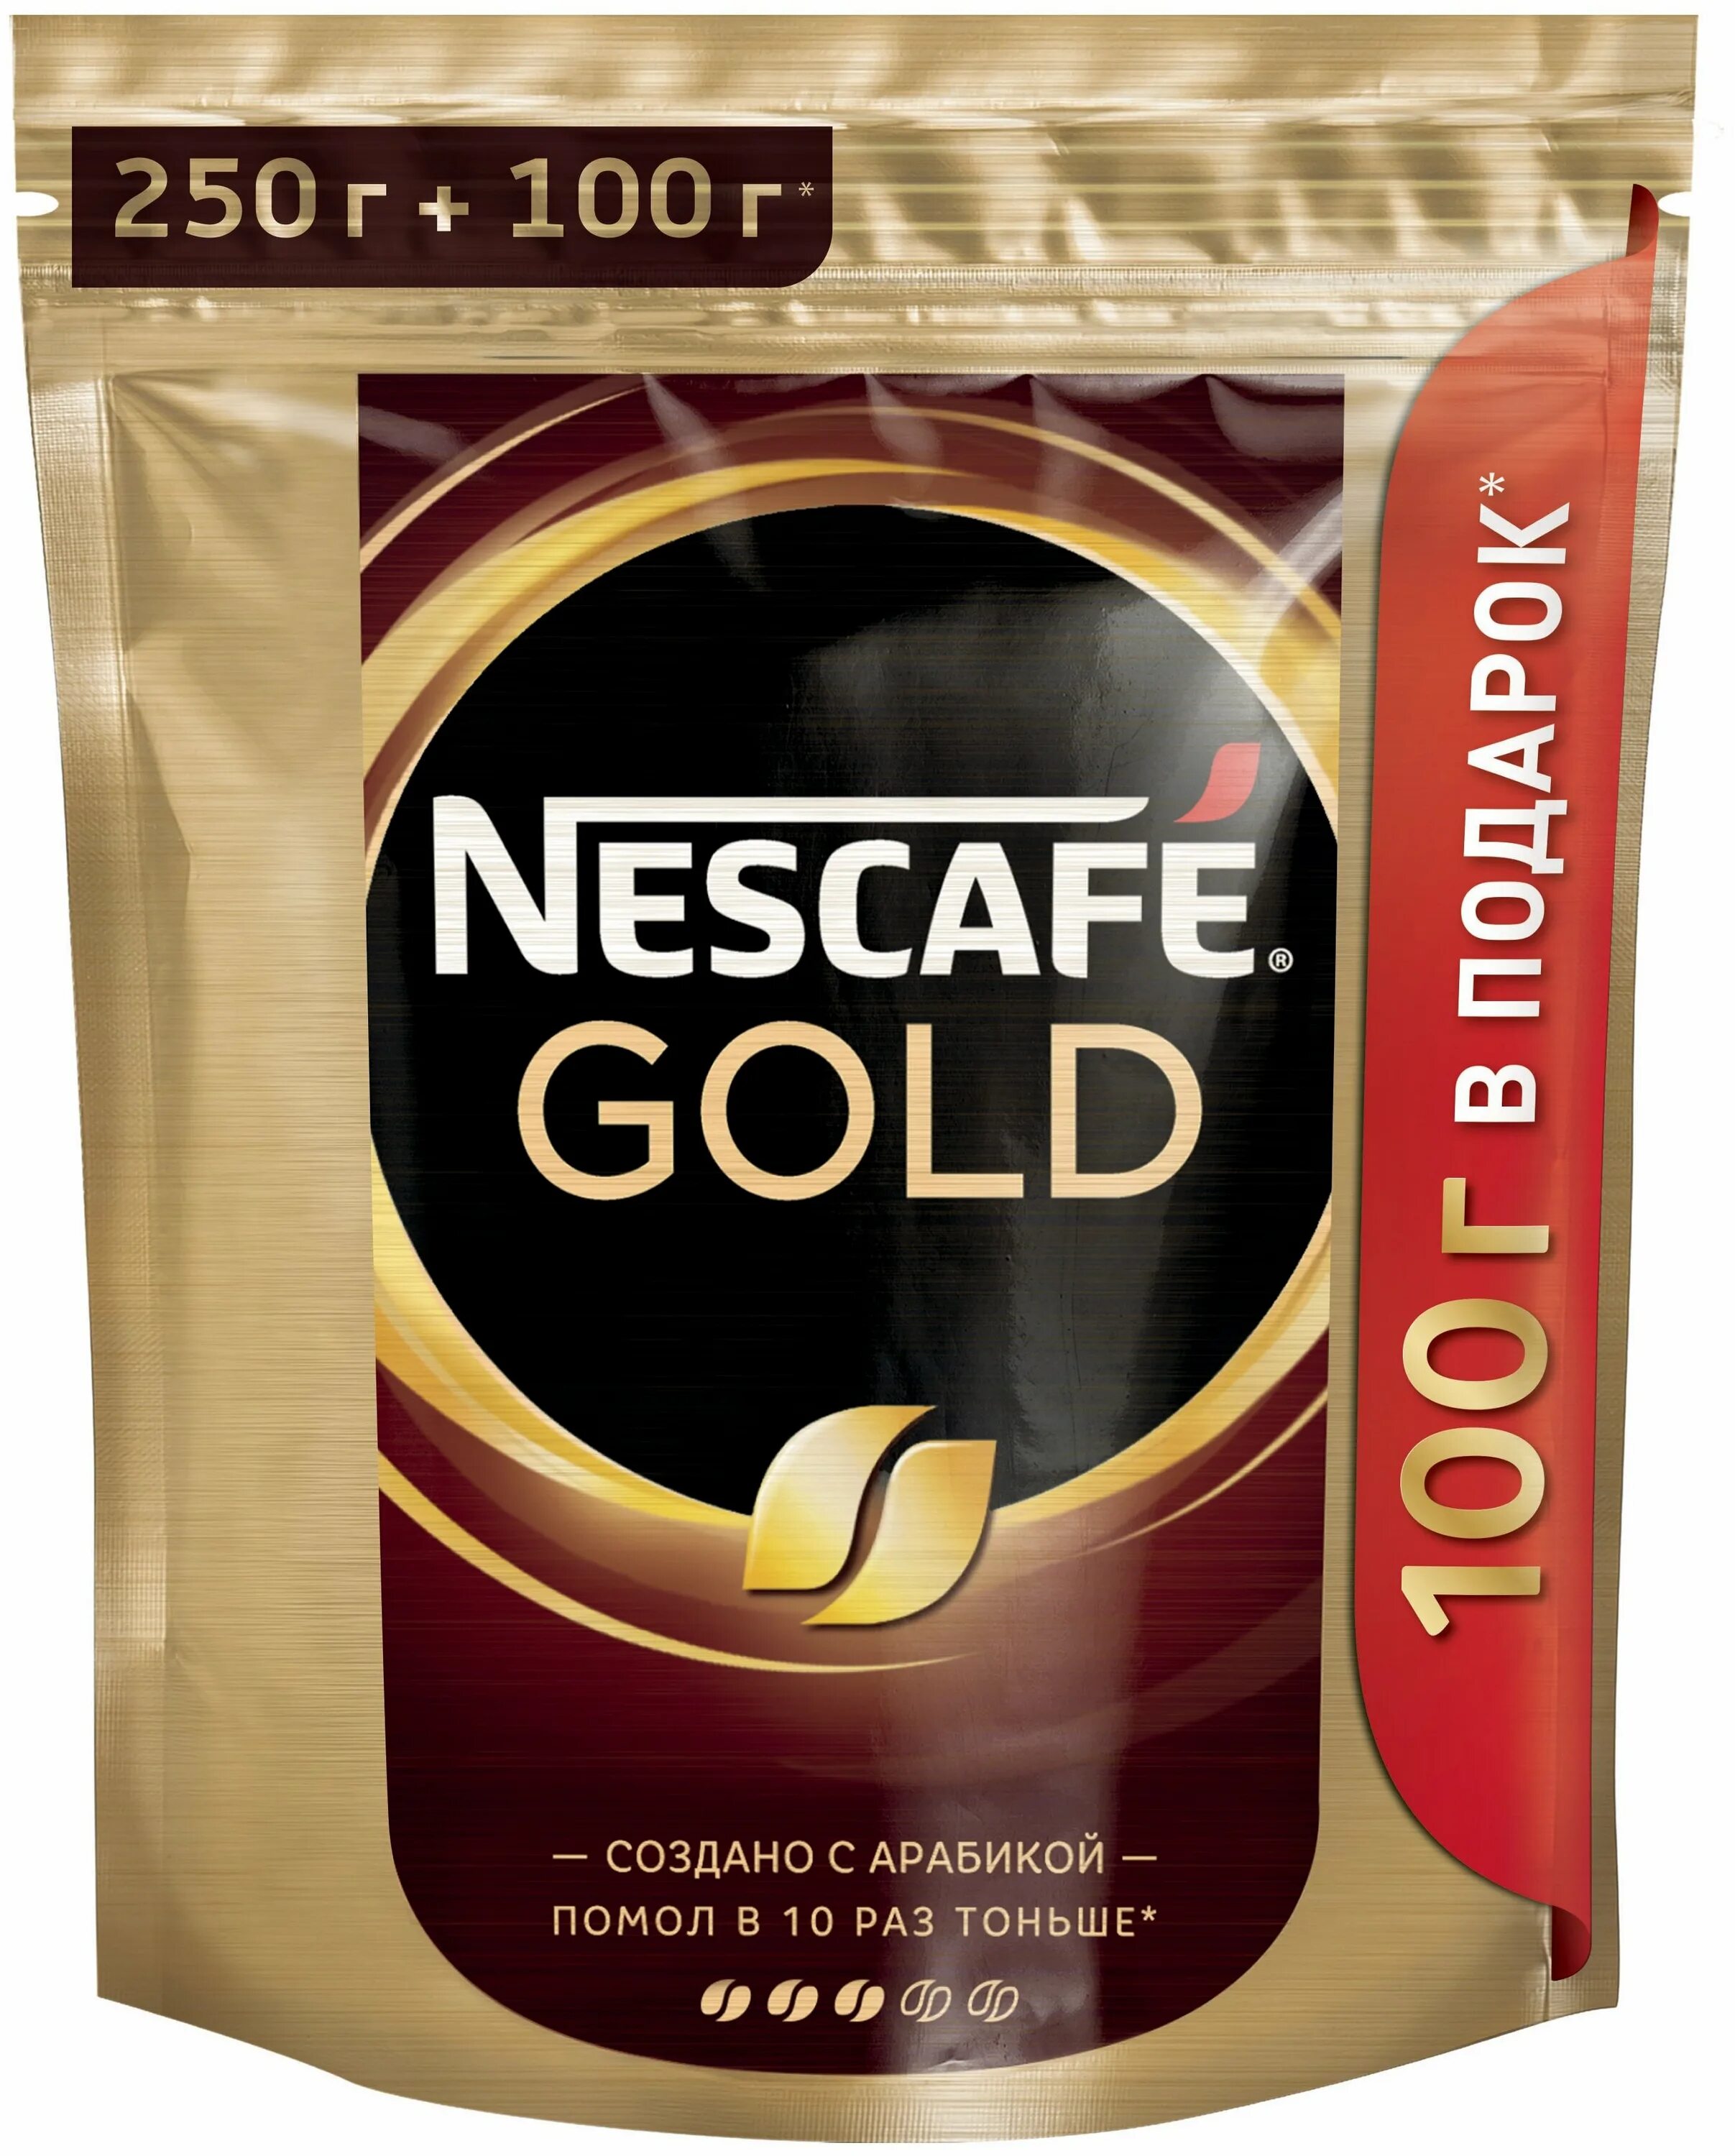 Купить кофе растворимый нескафе голд. Nescafe Gold 250г. Nescafe Gold 250. Nescafe Gold 250+50г. Кофе Нескафе Голд 250.